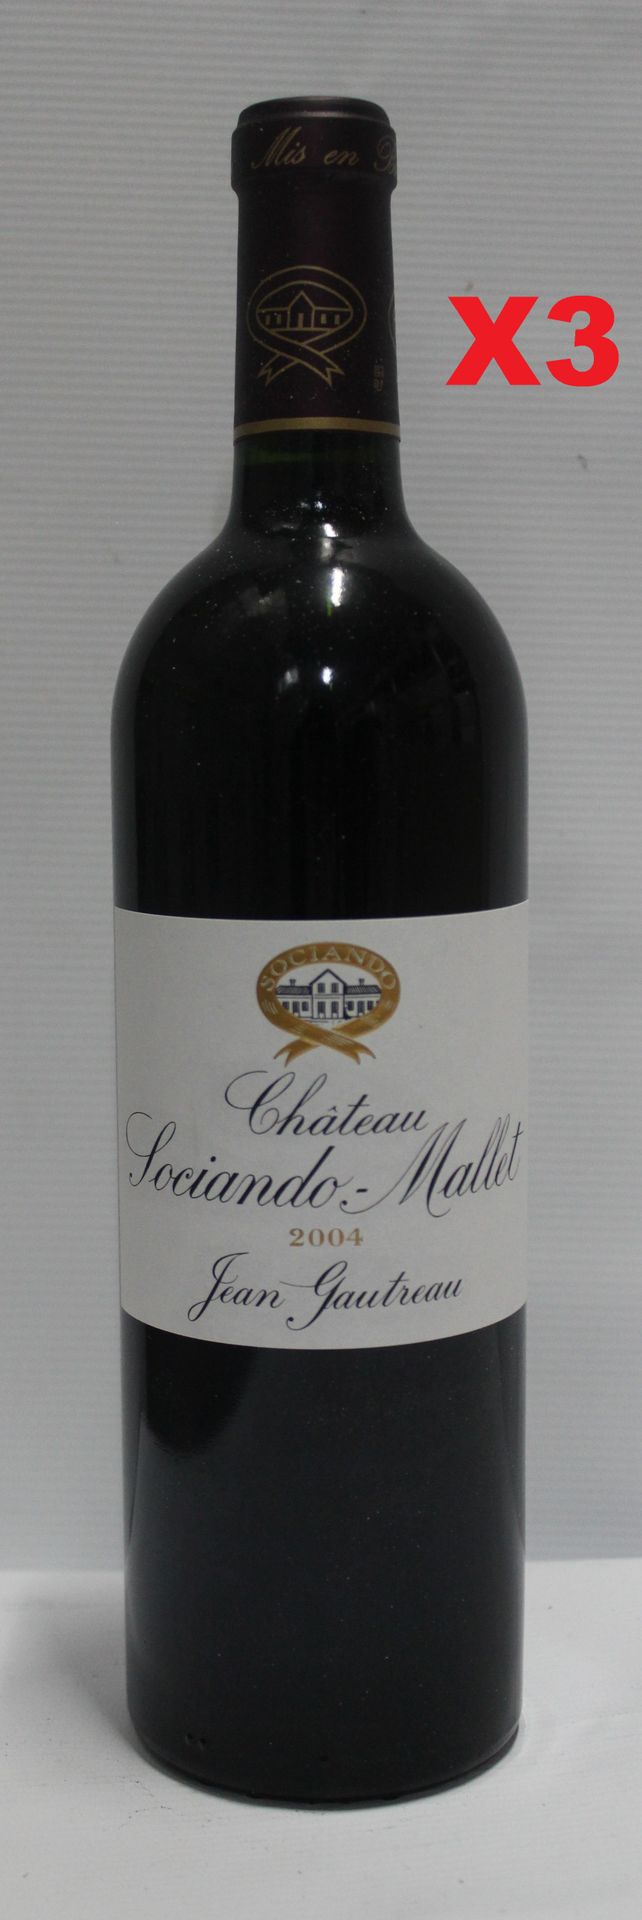 Null 3 Bottles 75cl - Haut-Médoc - Château SOCIANDO MALLET - Red 2004

Bottles p&hellip;